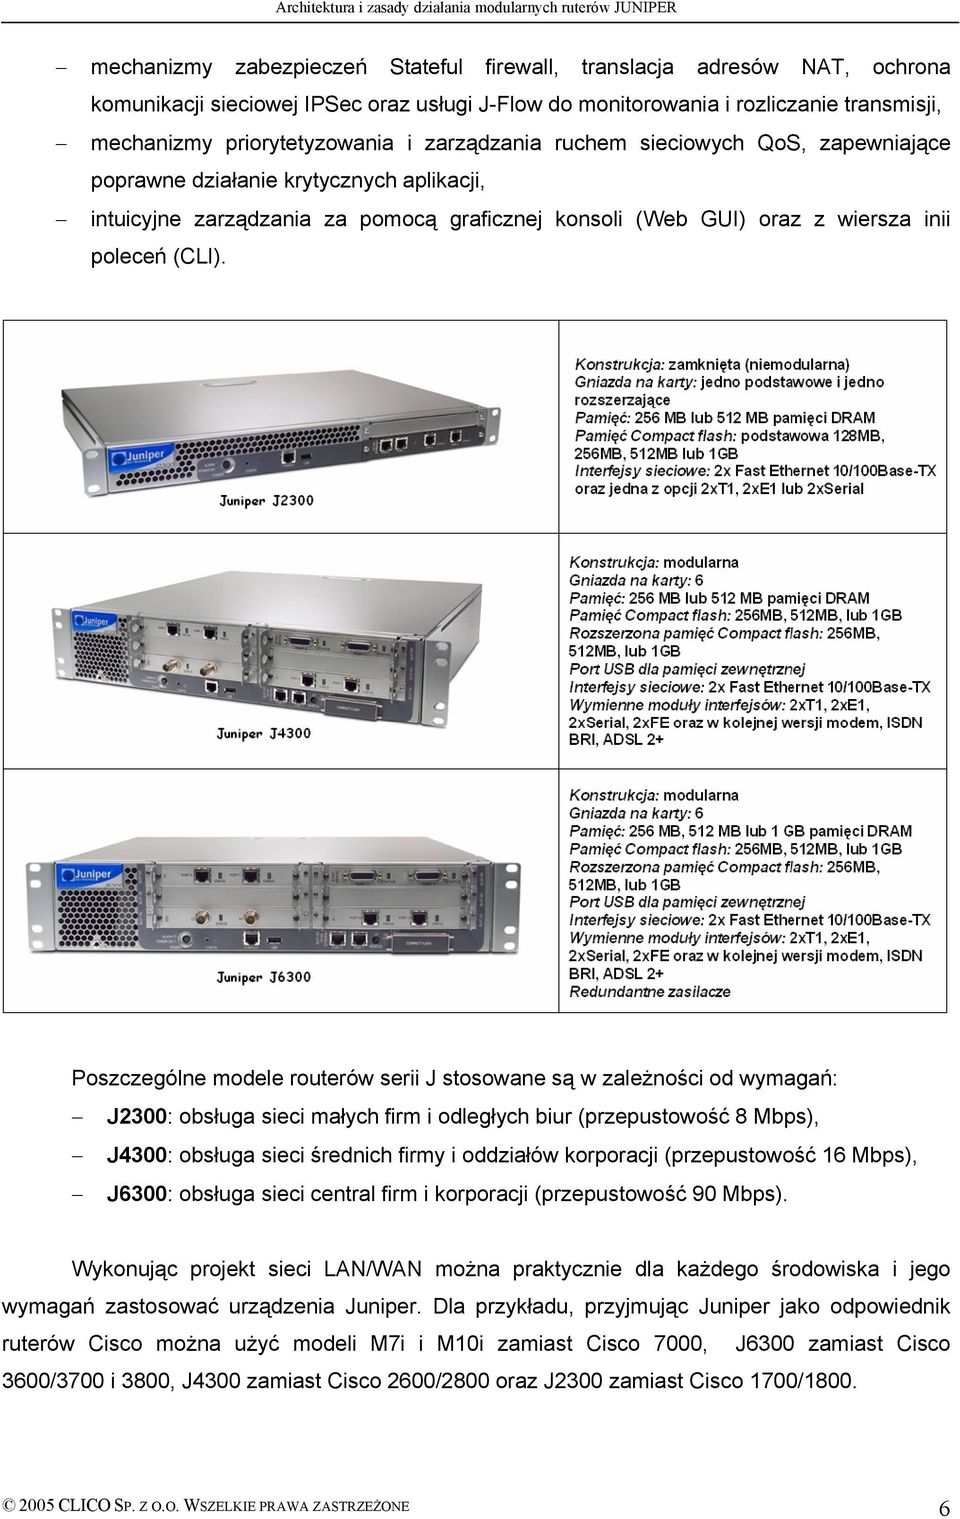 PoszczegÜlne modele routerüw serii J stosowane są w zależności od wymagań: J2300: obsługa sieci małych firm i odległych biur (przepustowość 8 Mbps), J4300: obsługa sieci średnich firmy i oddziałöw